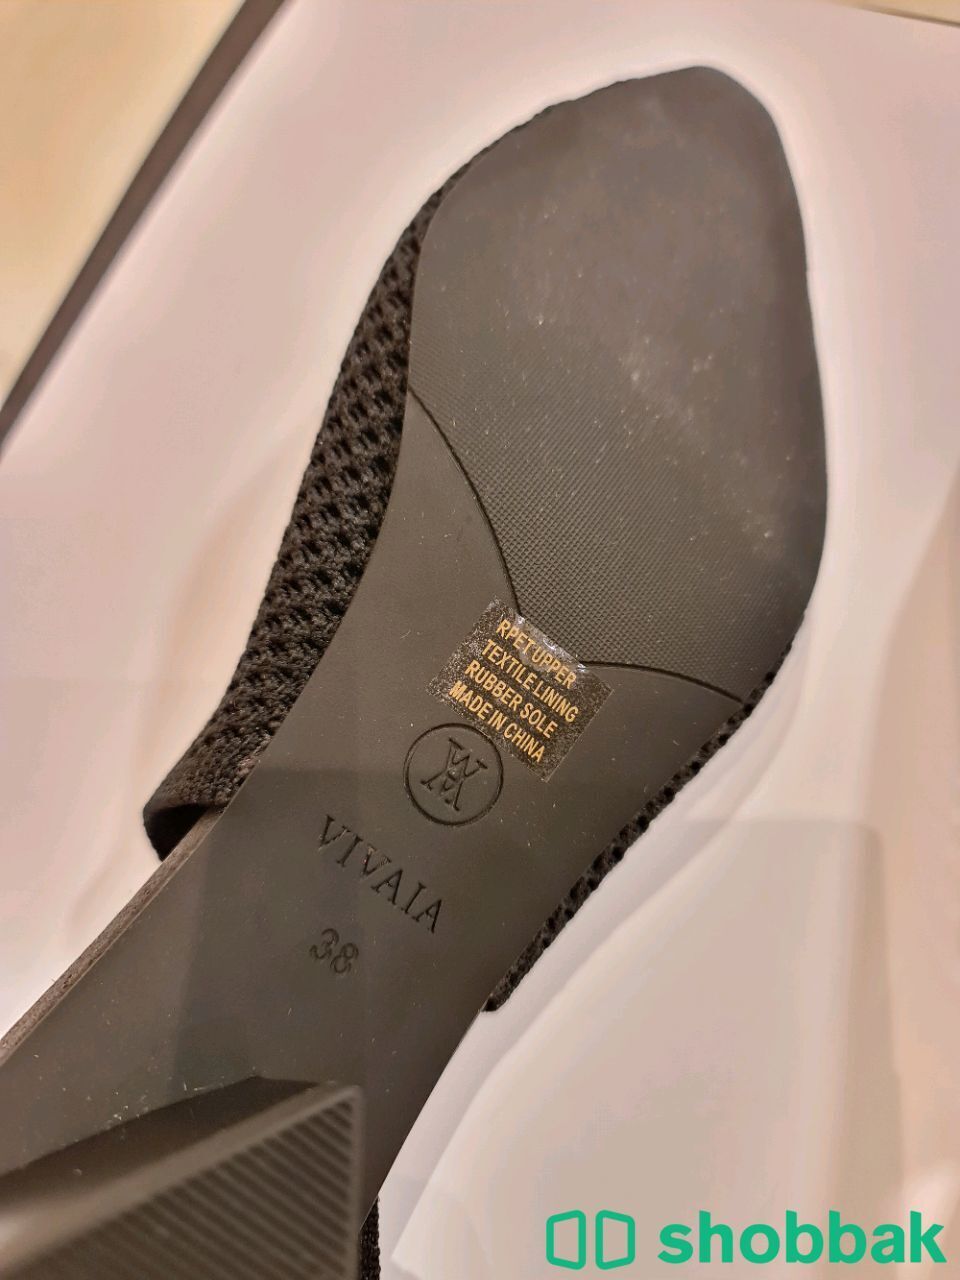 حذاء نسائي ماركة ڤيڤايا - مقاس 38 و اللون اسود Shobbak Saudi Arabia